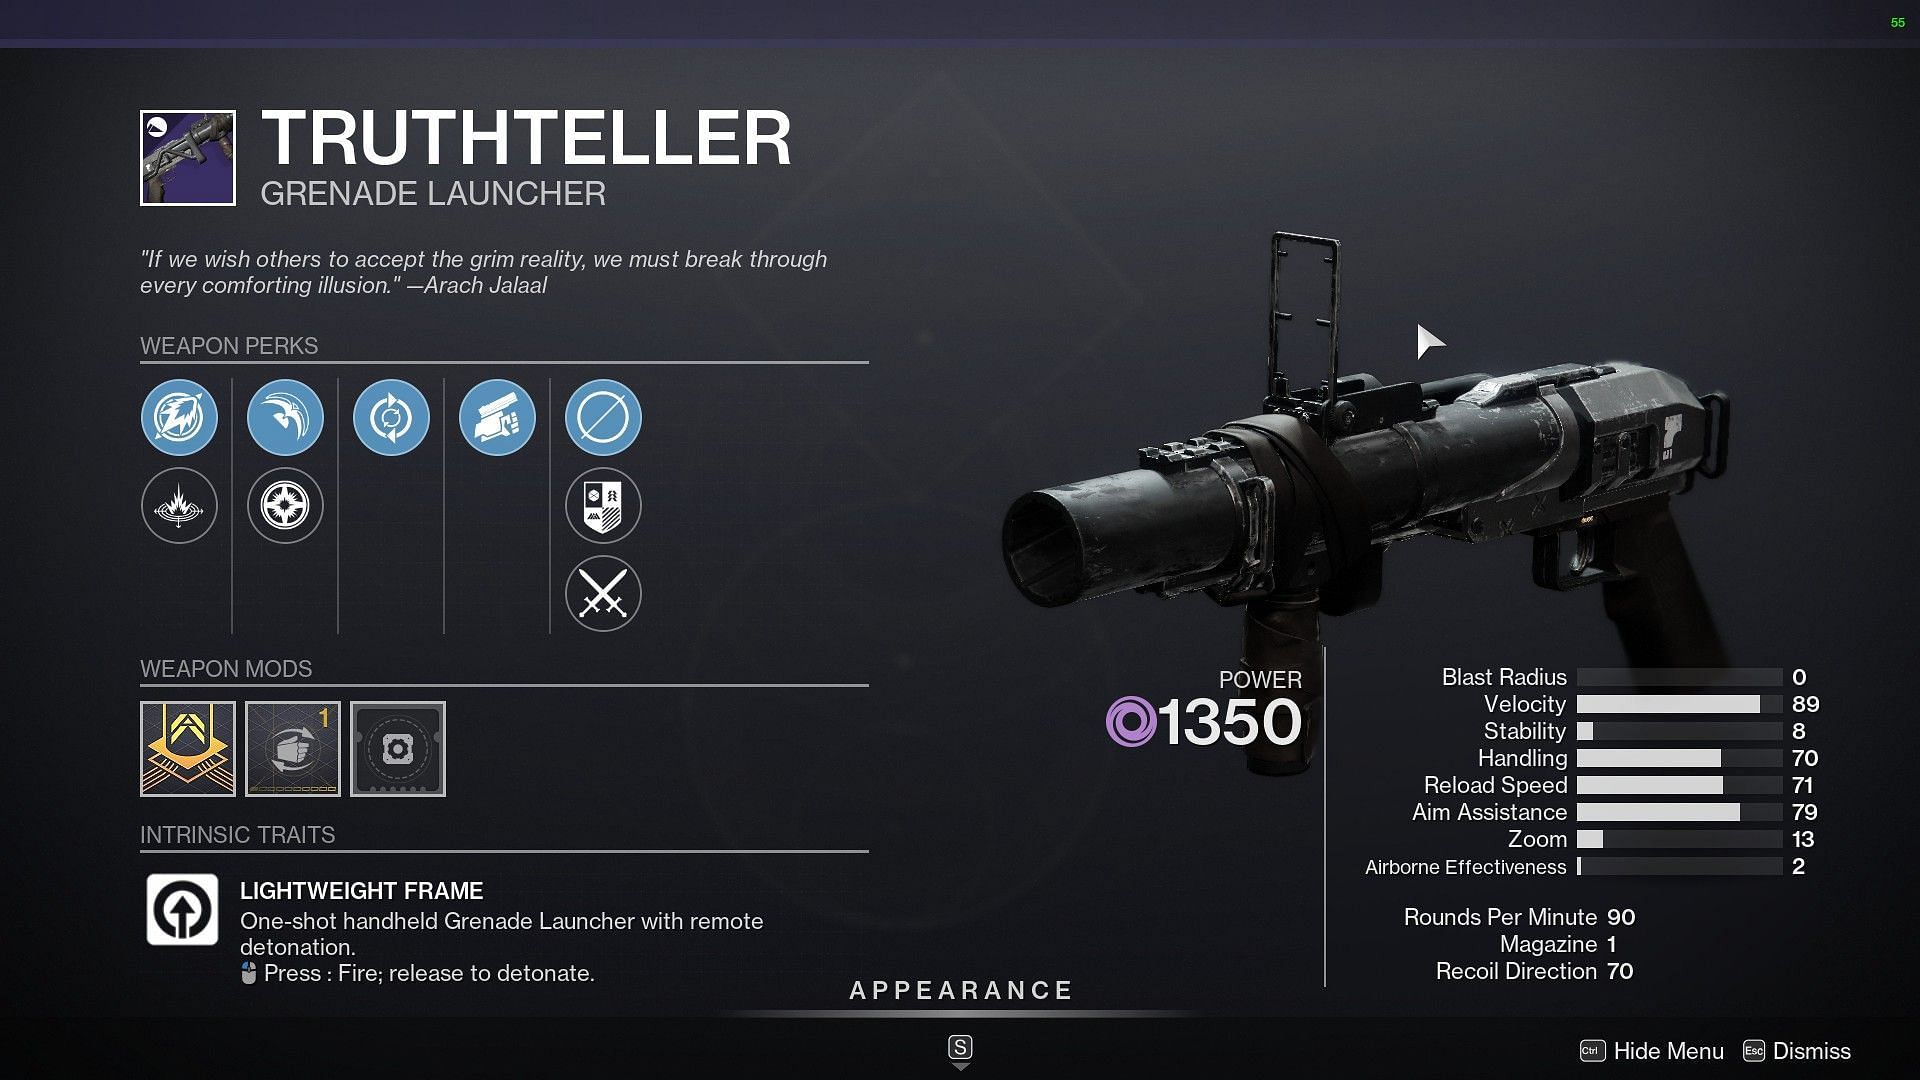 Truthteller Grenade Launcher (Image via Destiny 2)